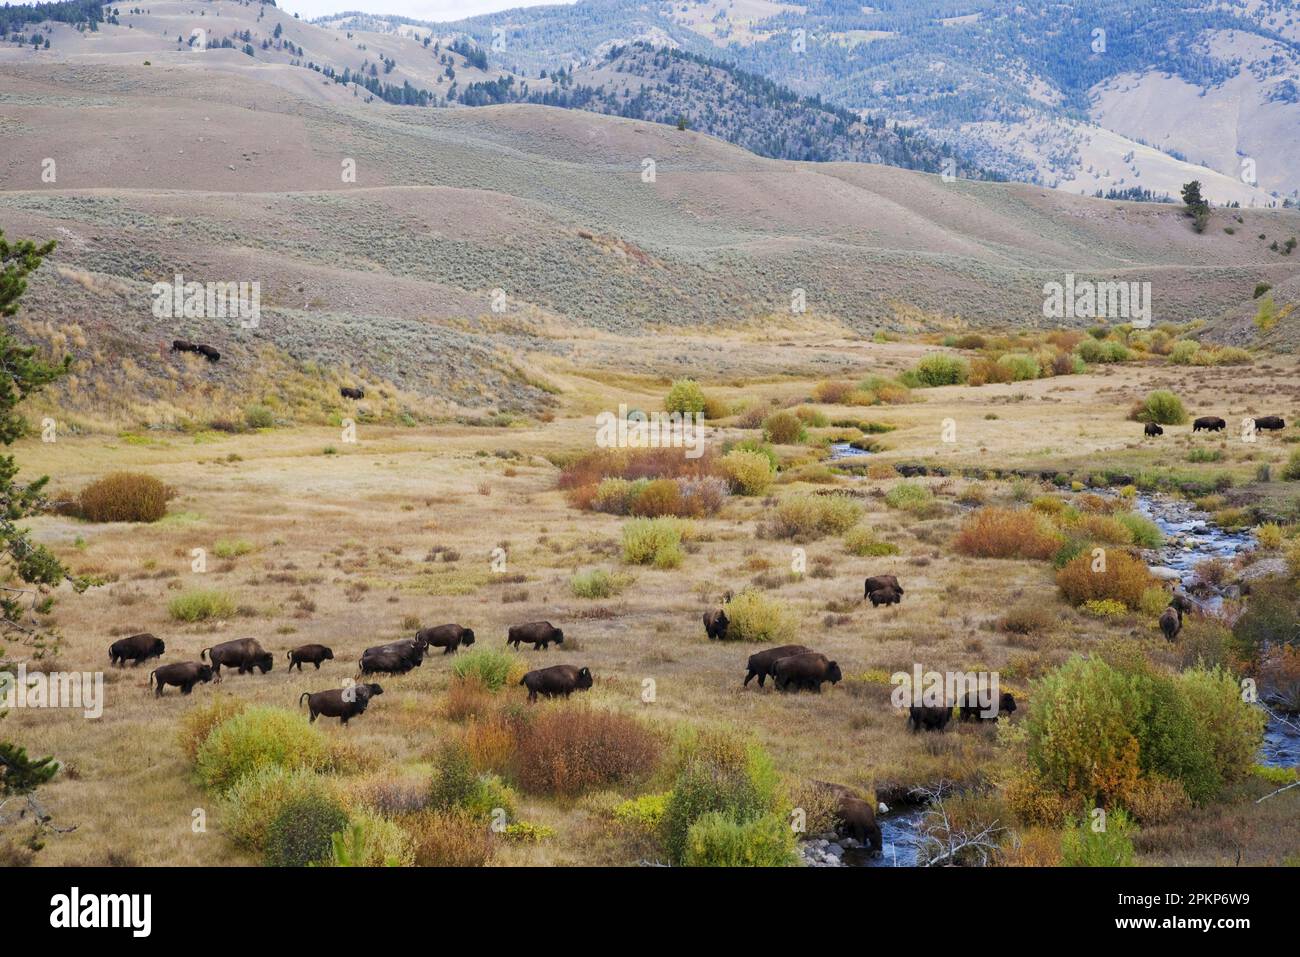 North American Bison (Bison Bison) adulte männliche, weibliche und Kälber, Herde, die den Lebensraum des Flusstals durchquert, Yellowstone N. P. Wyoming (U.) S. A. Stockfoto